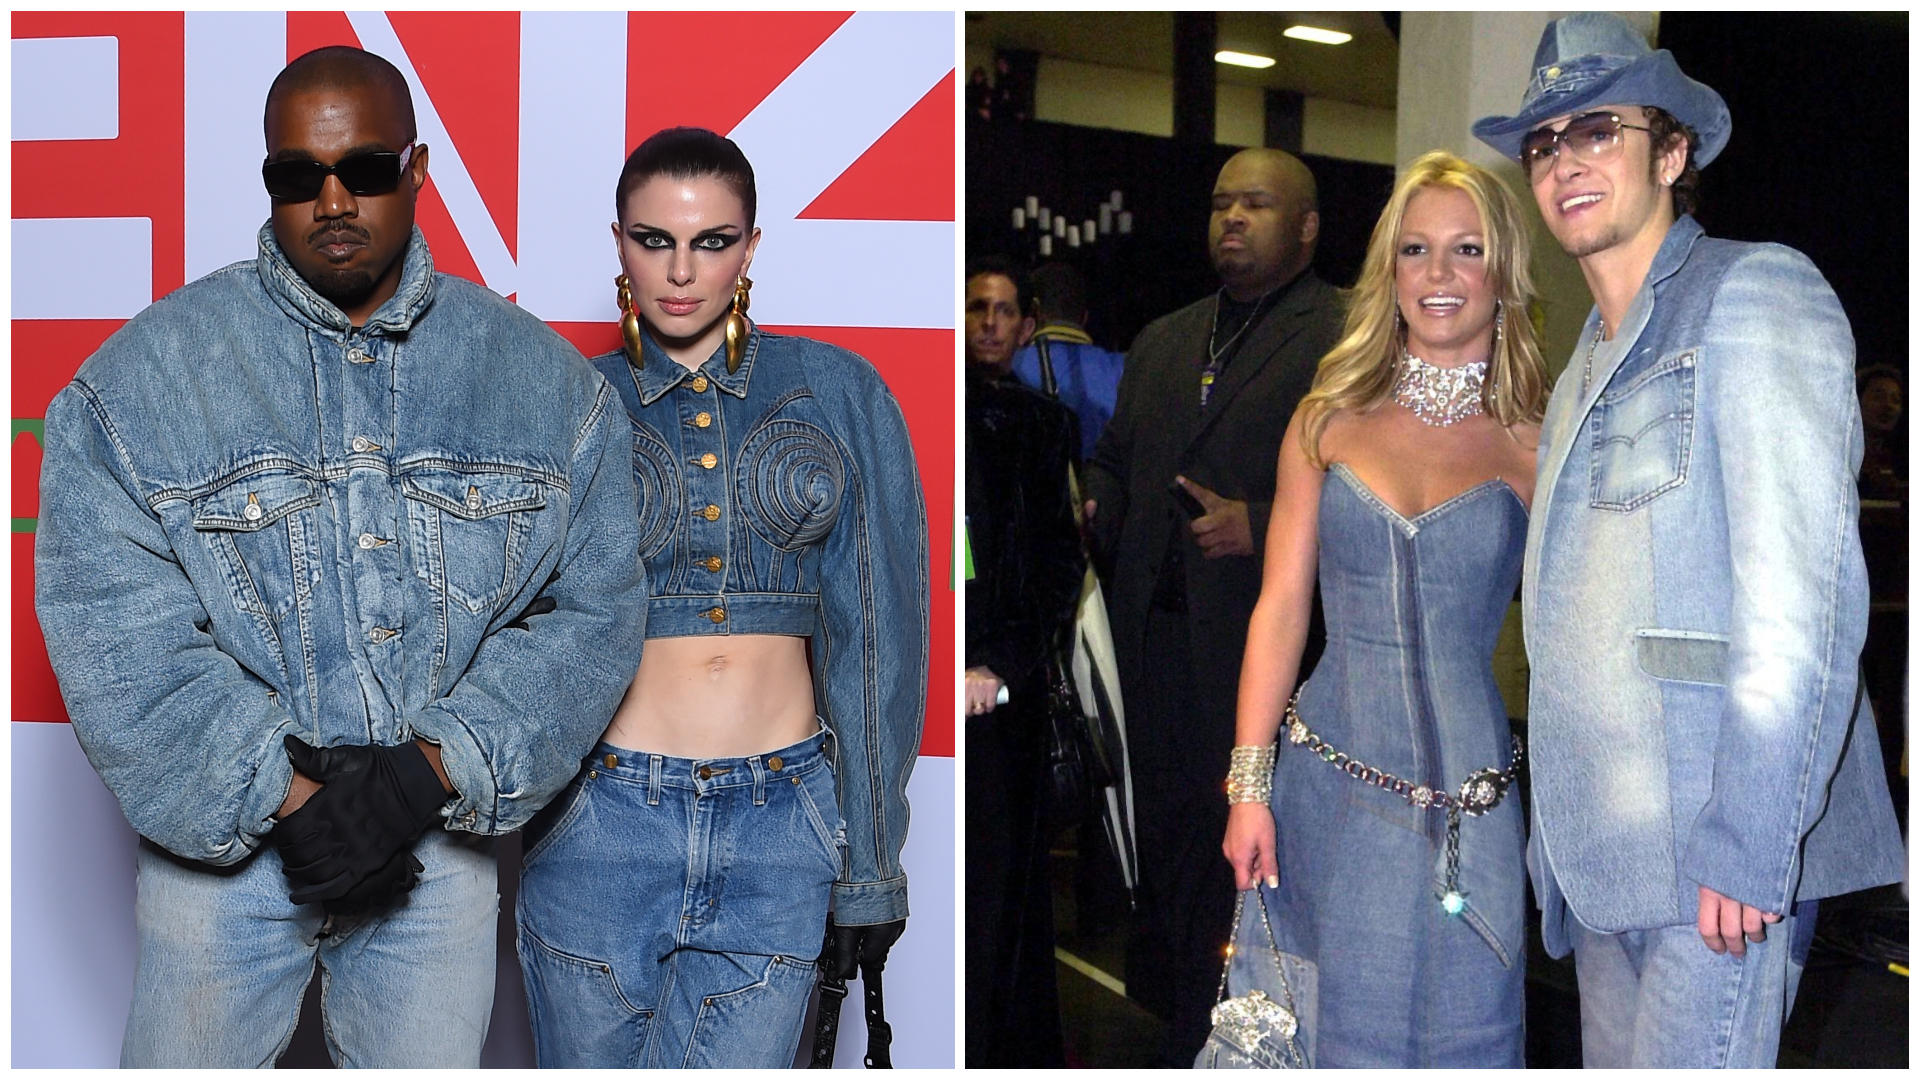 Wir sehen doppelt! Links Kanye West und Julia Fox bei der Pariser Fashion Week 2022 und rechts Britney Spears und Justin Timberlake 2001 bei den AMAs.